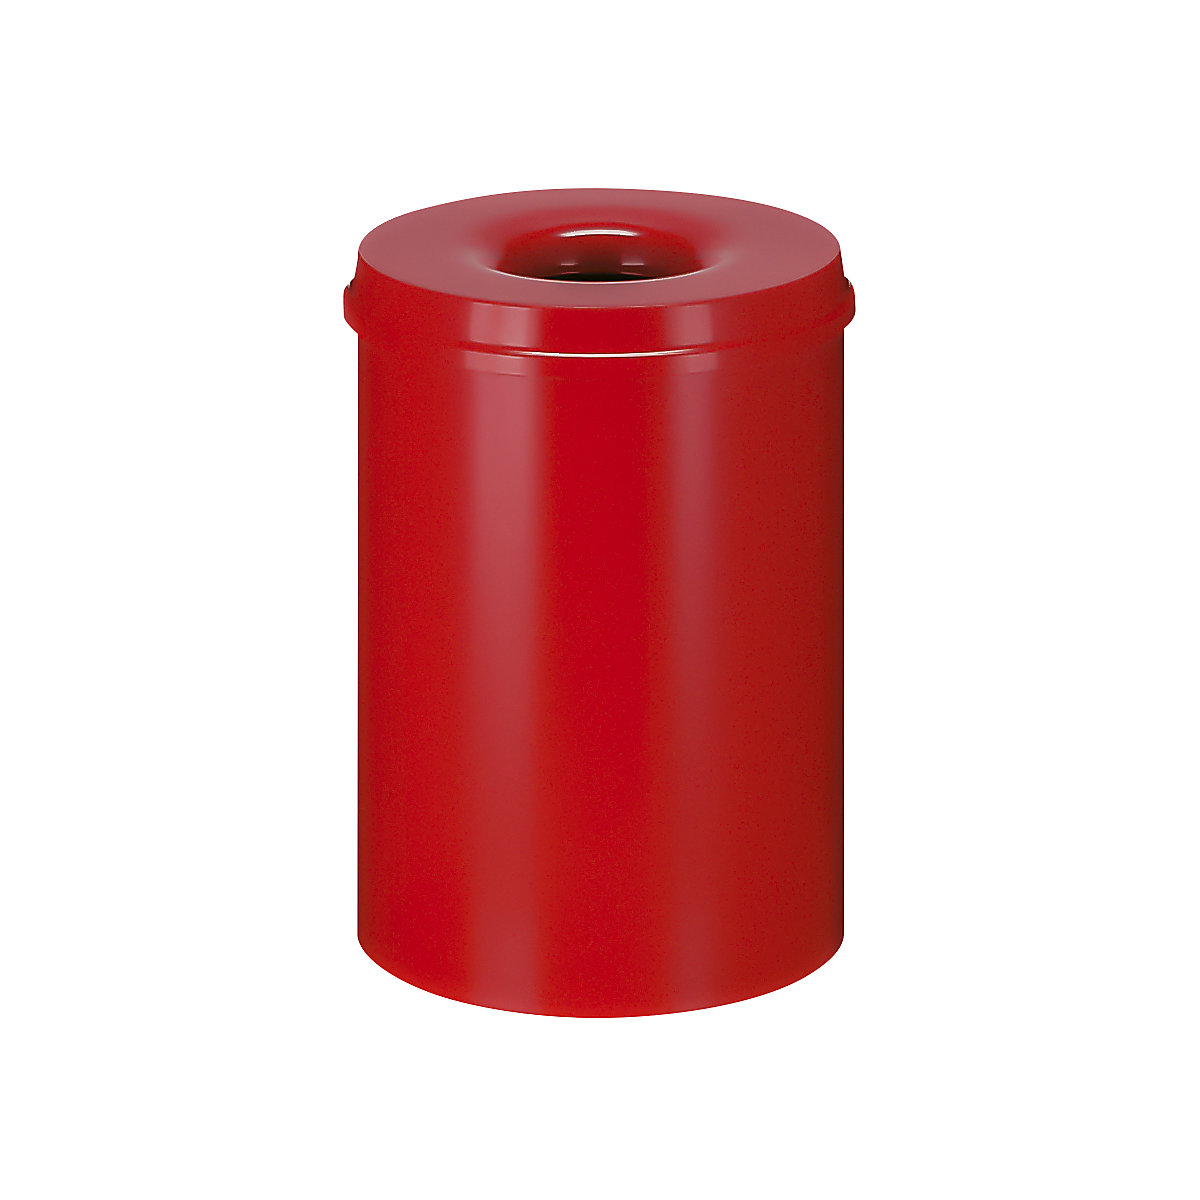 Corbeille à papier auto-extinguible, capacité 30 l, h x Ø 470 x 335 mm, corps rouge / étouffoir rouge